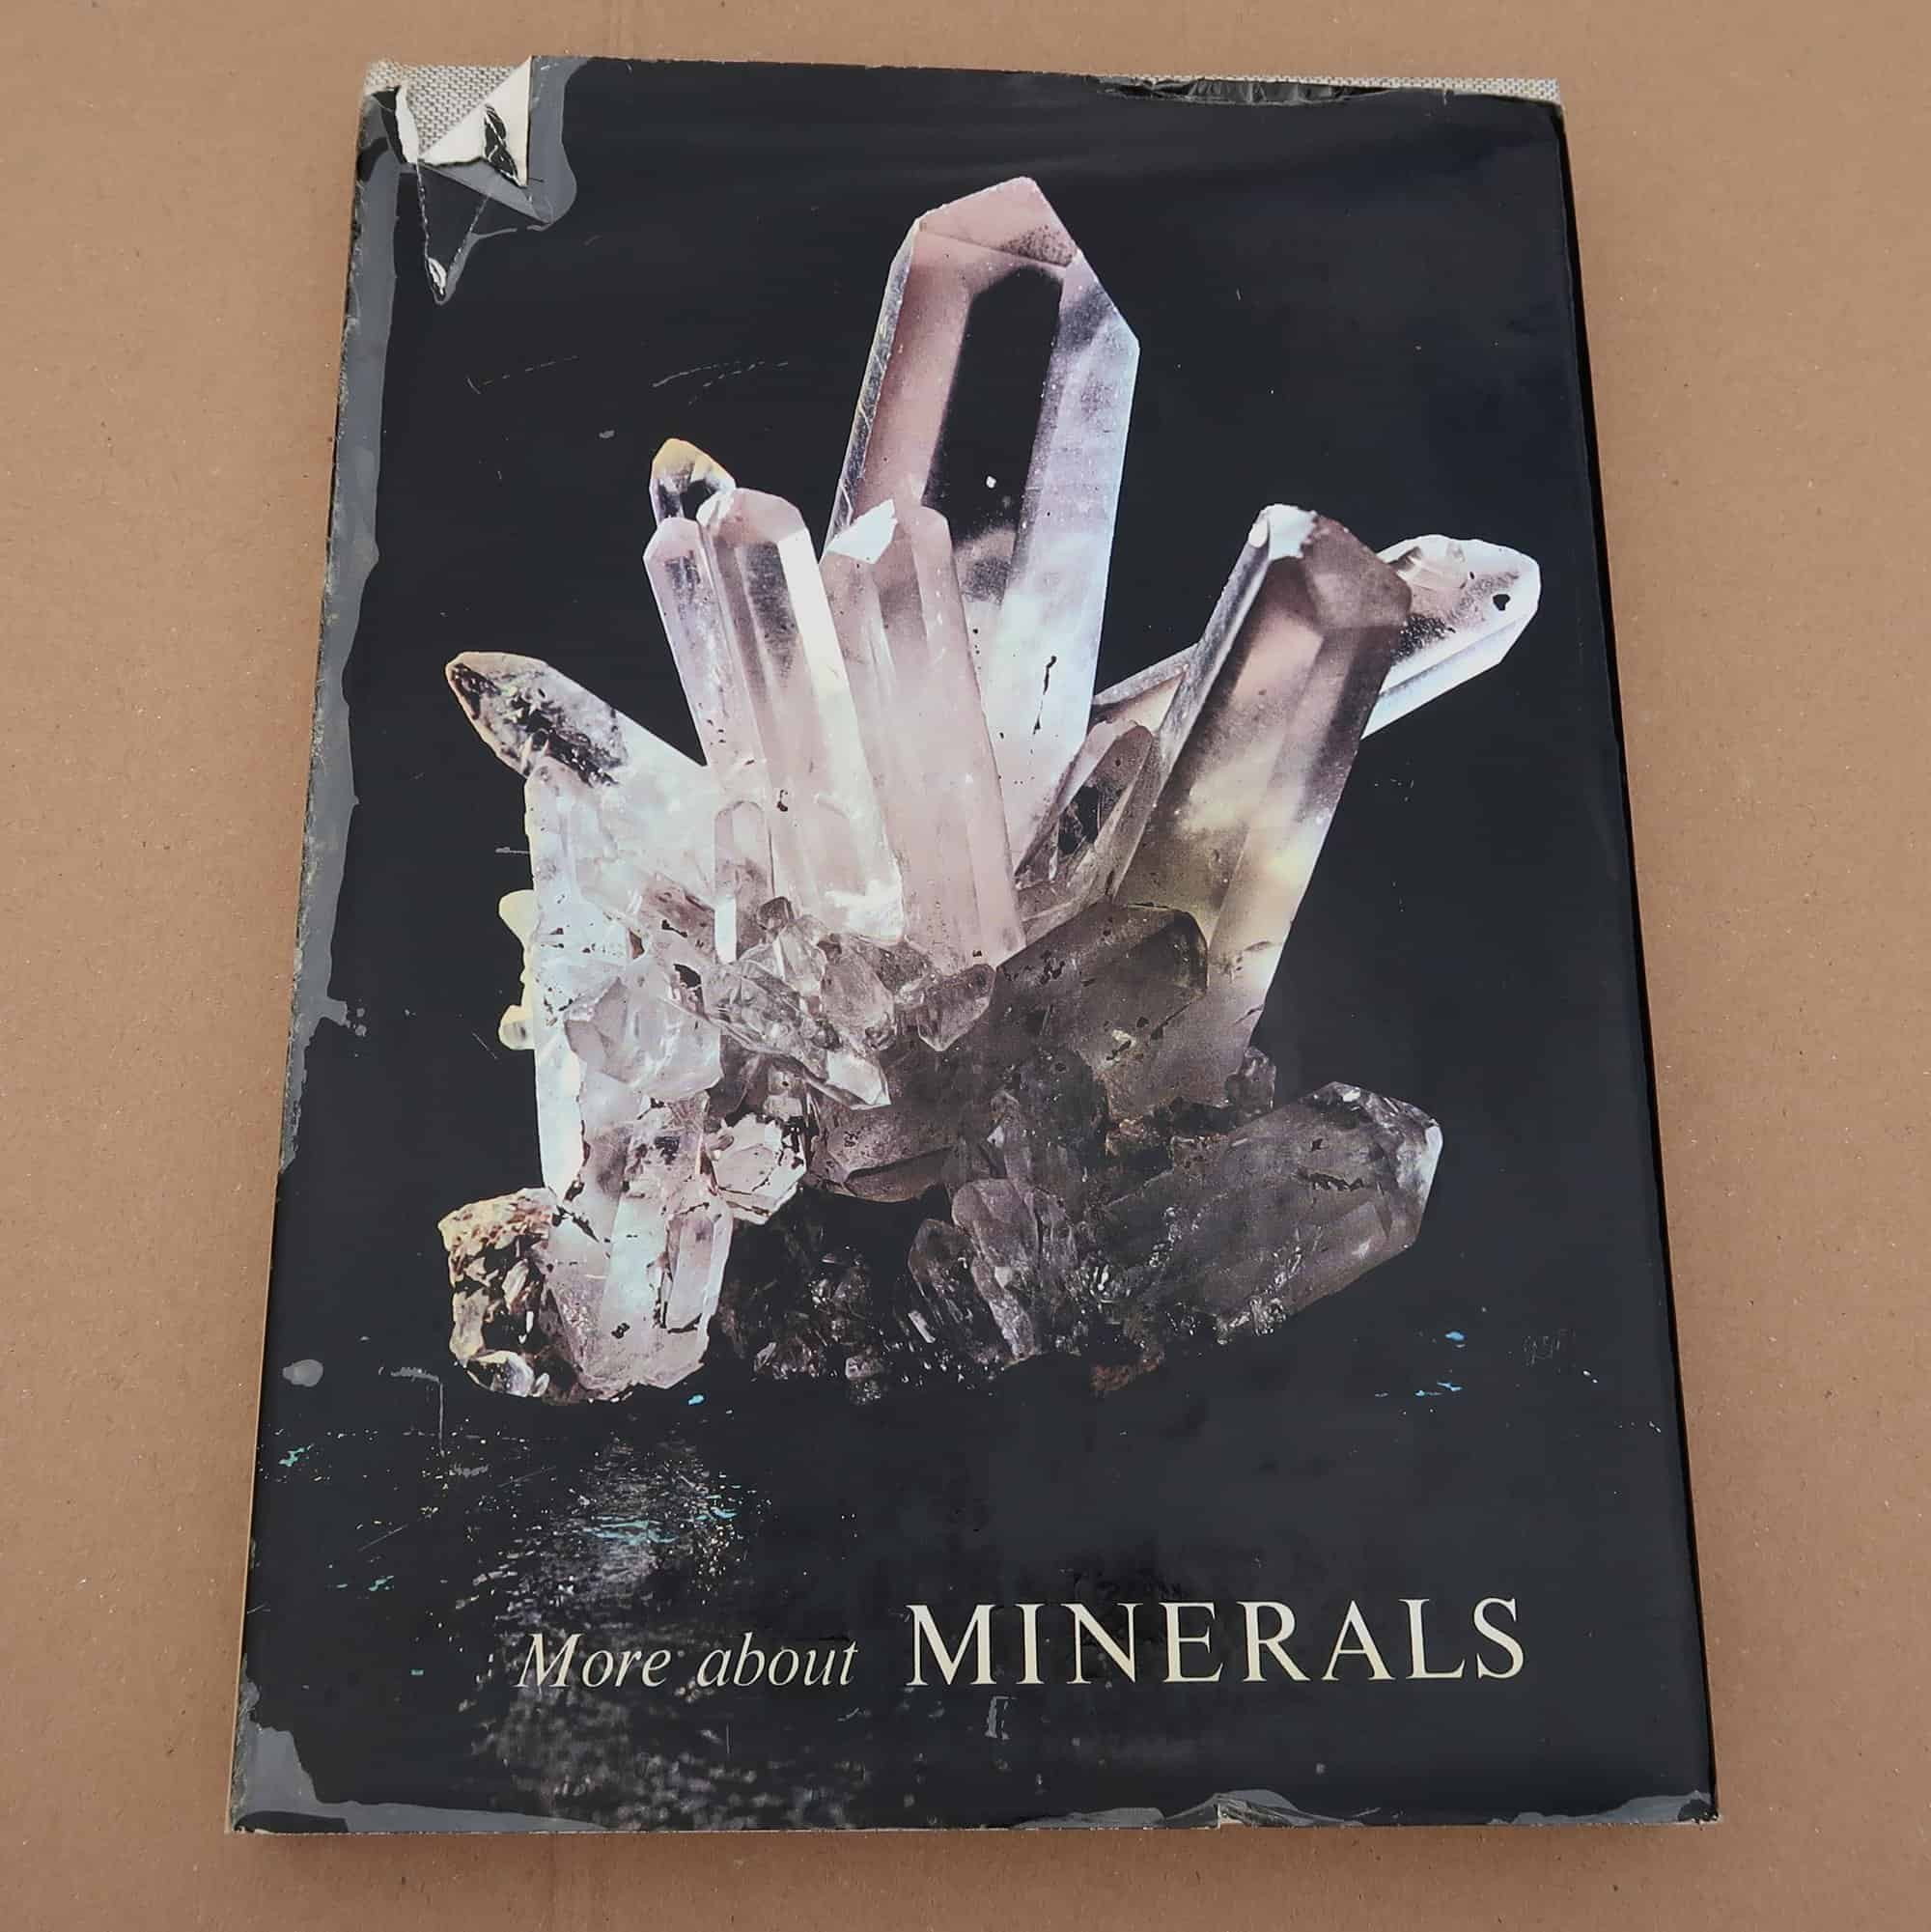 More about minerals: J. Ladurner & F. Purtscheller